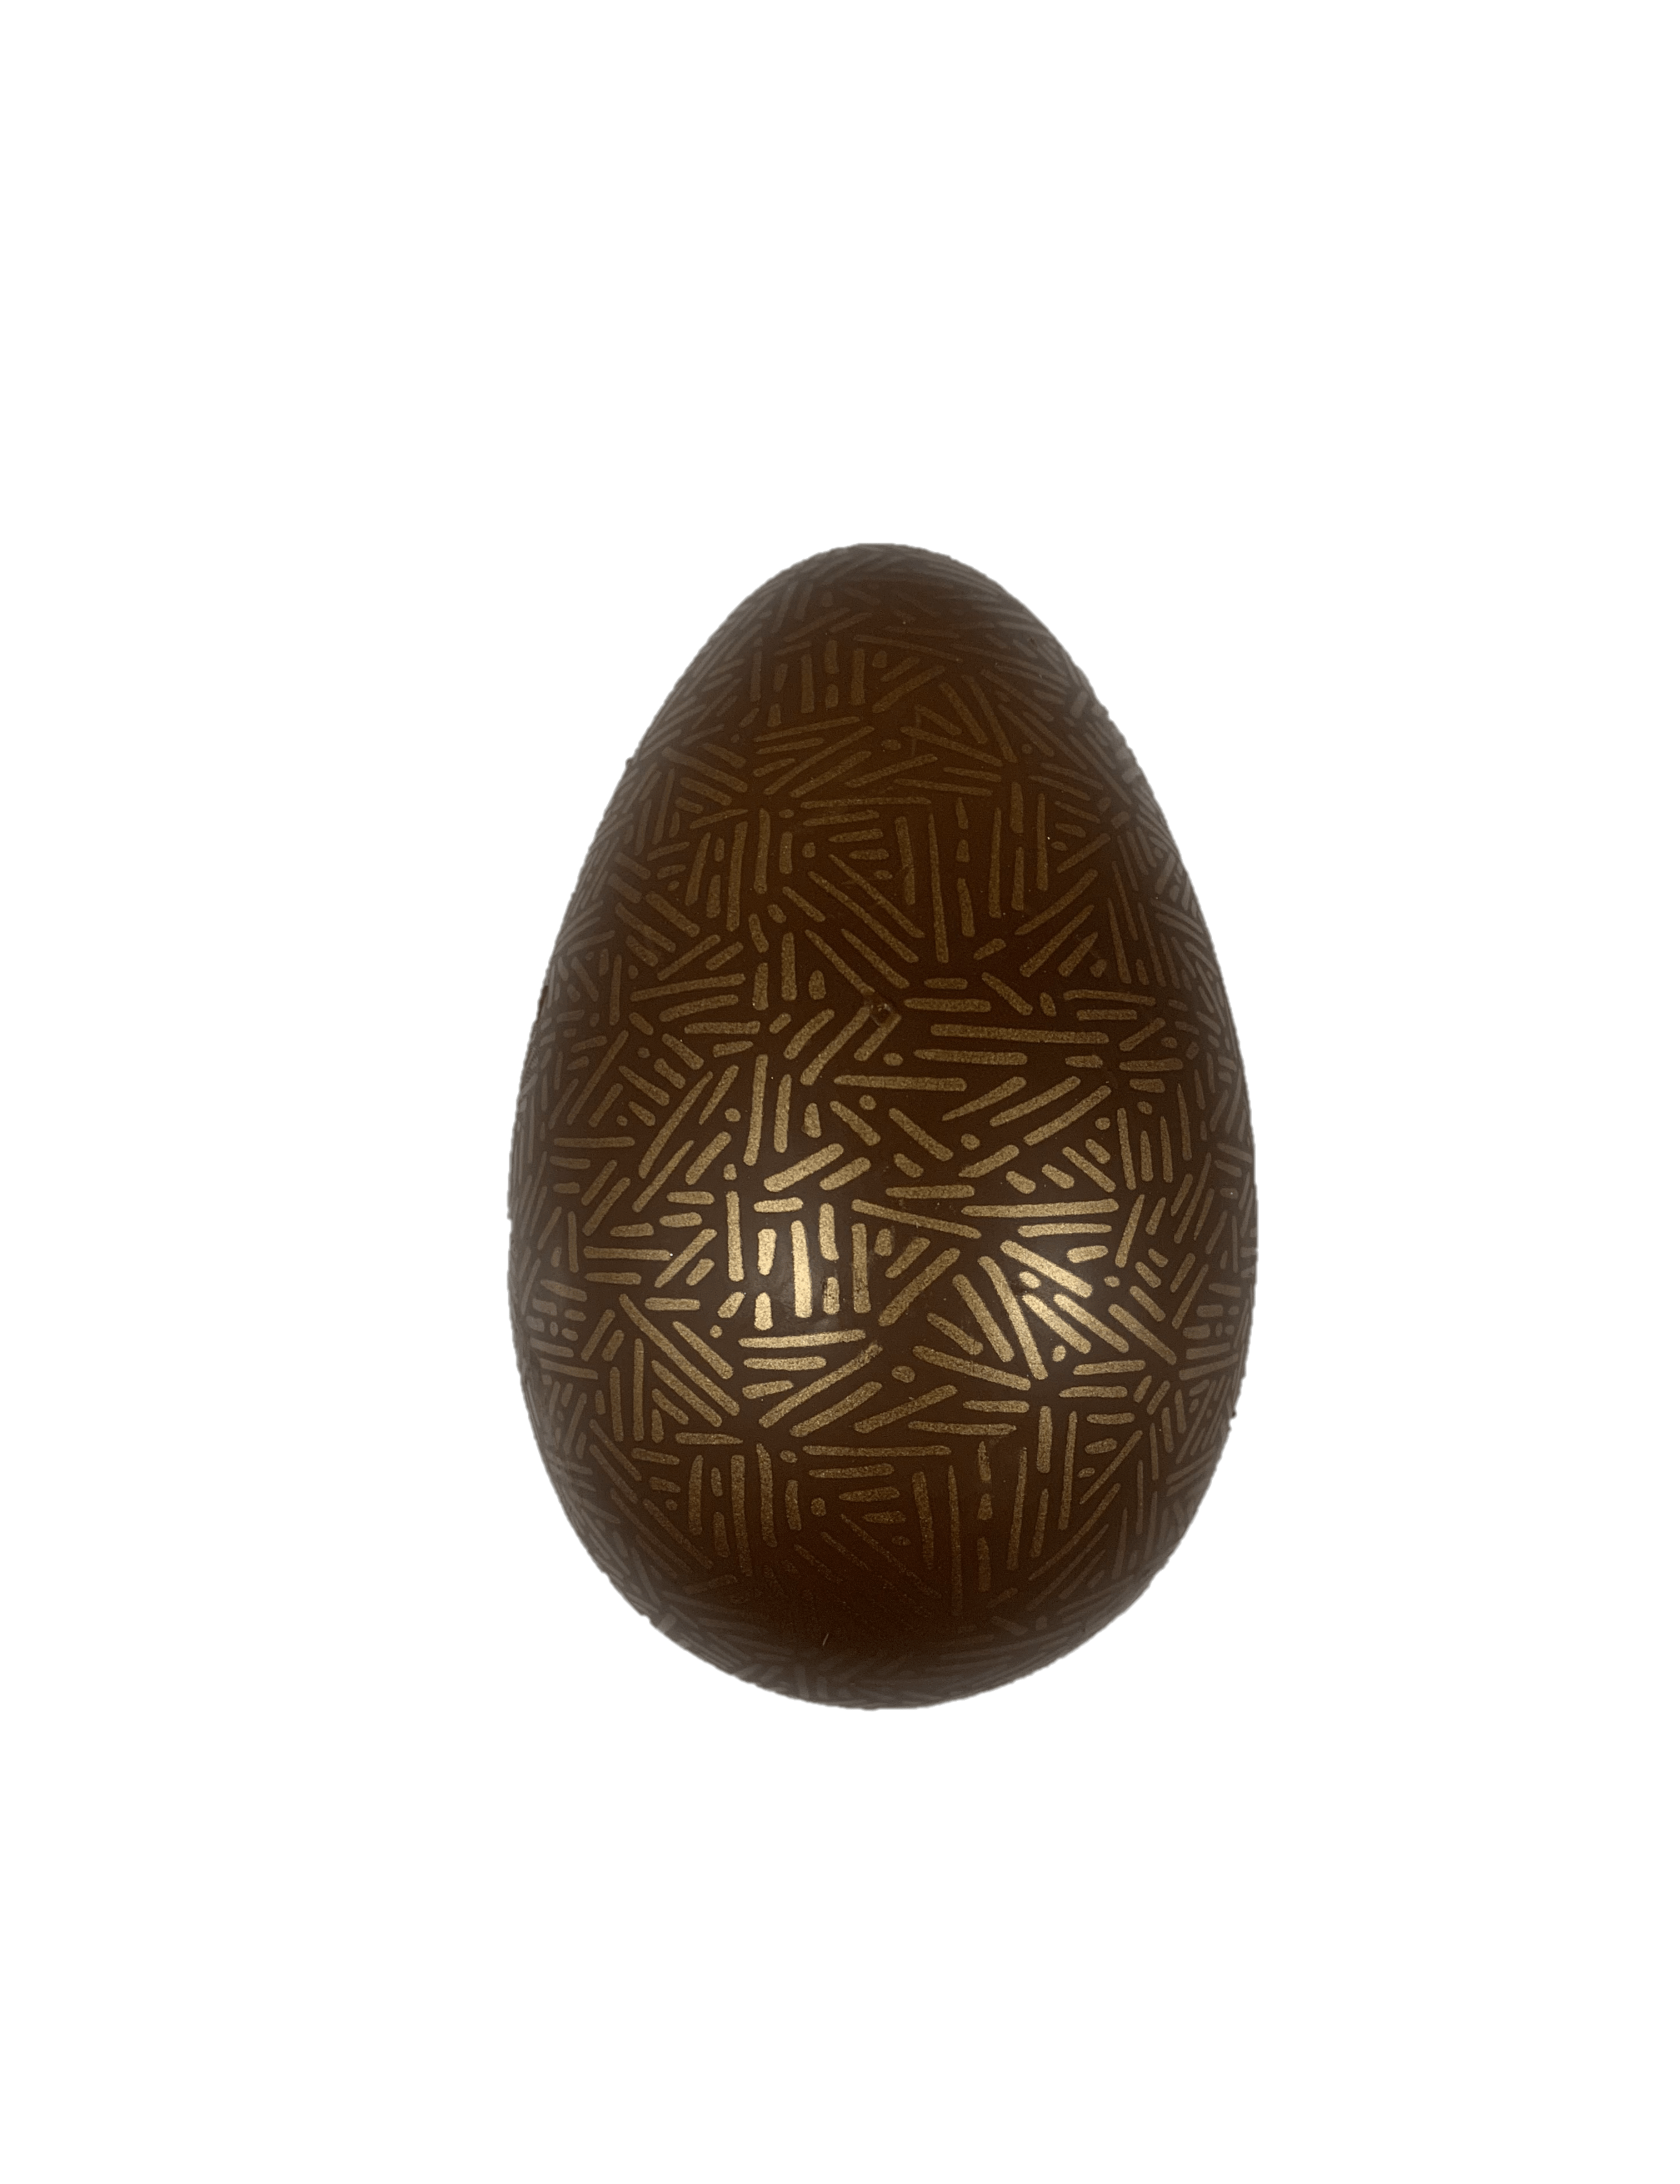 Easter-Egg-Decoratifs-Unpackaged-min.png